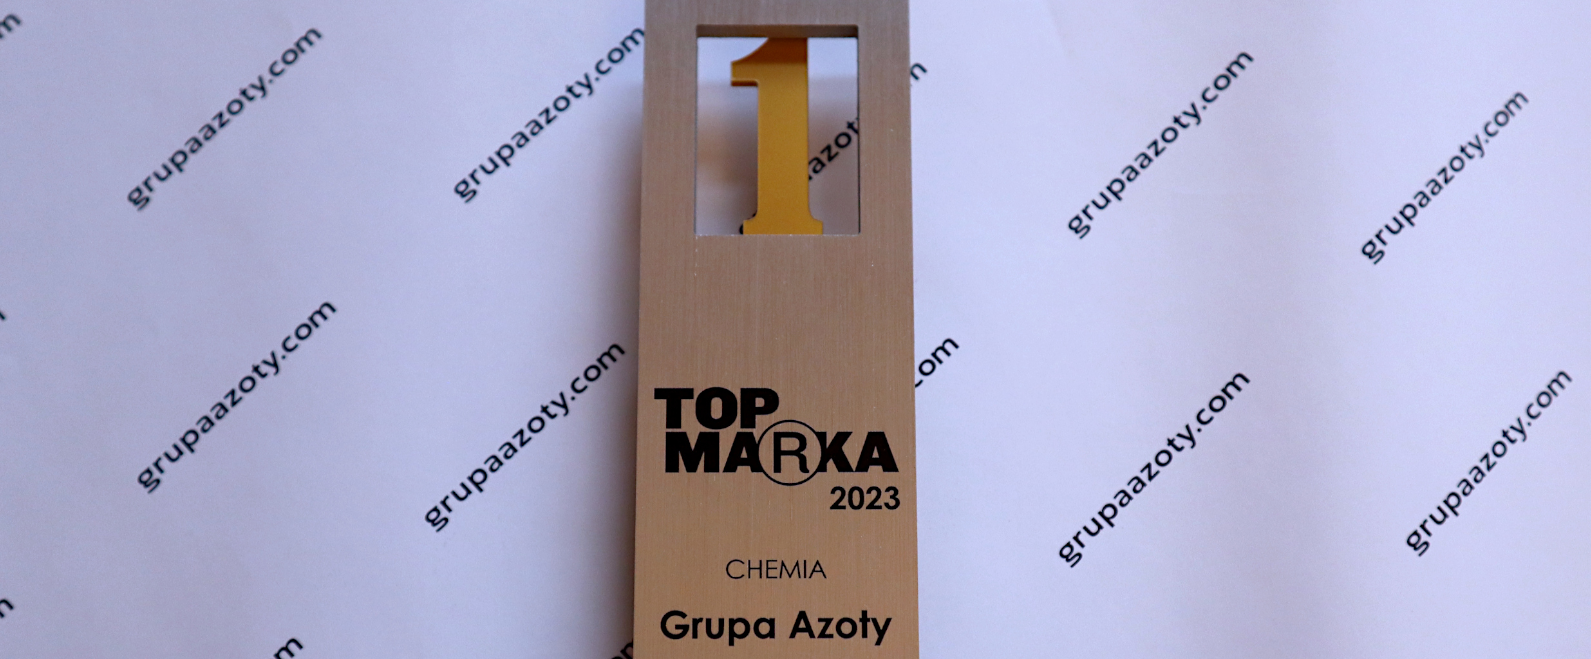 Top Marka 2023 – Grupa Azoty najsilniejszą marką w branży chemicznej 